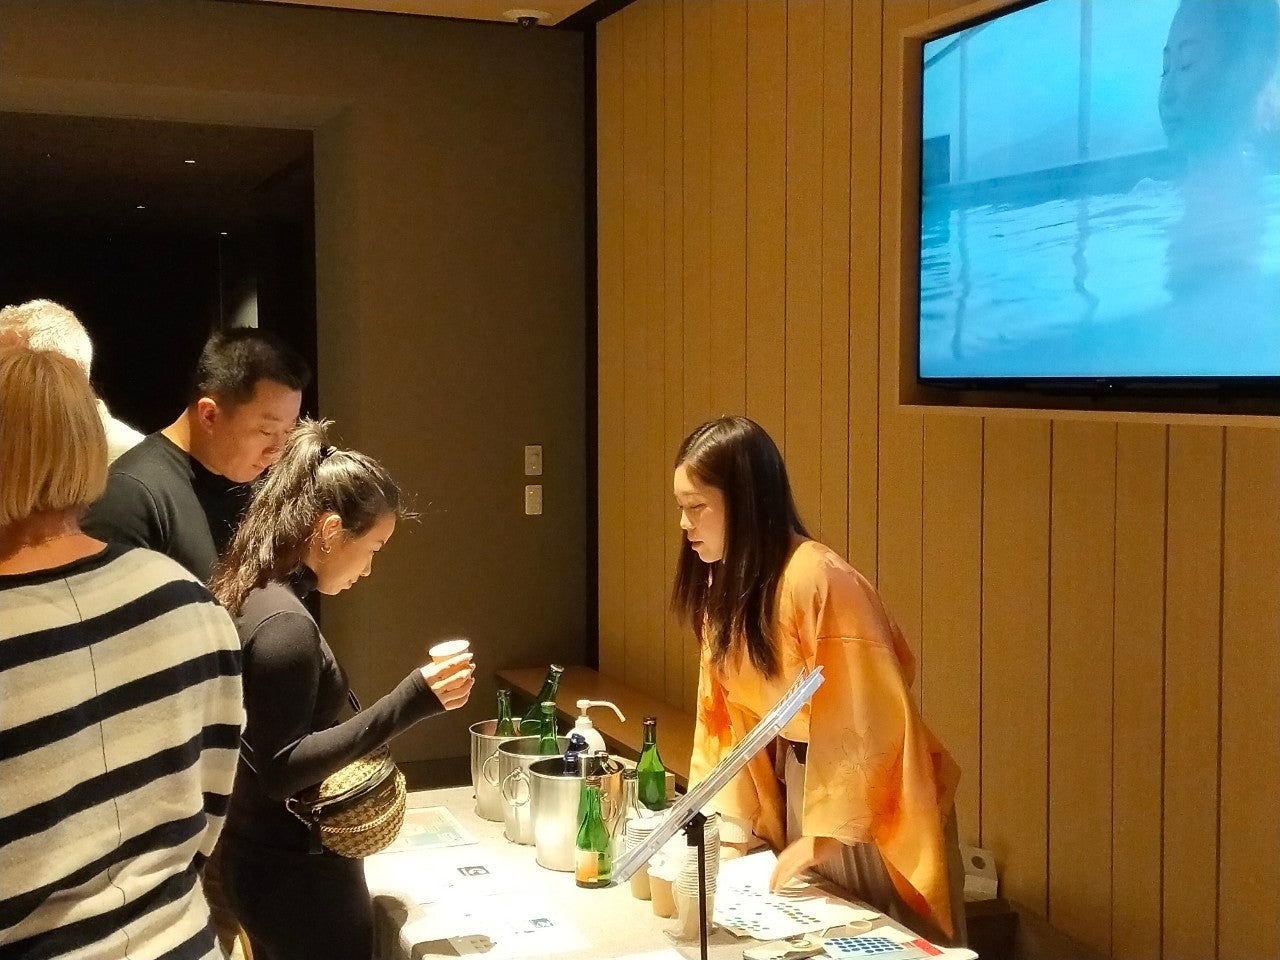 Sake tasting with sake sommelier in Tokyo